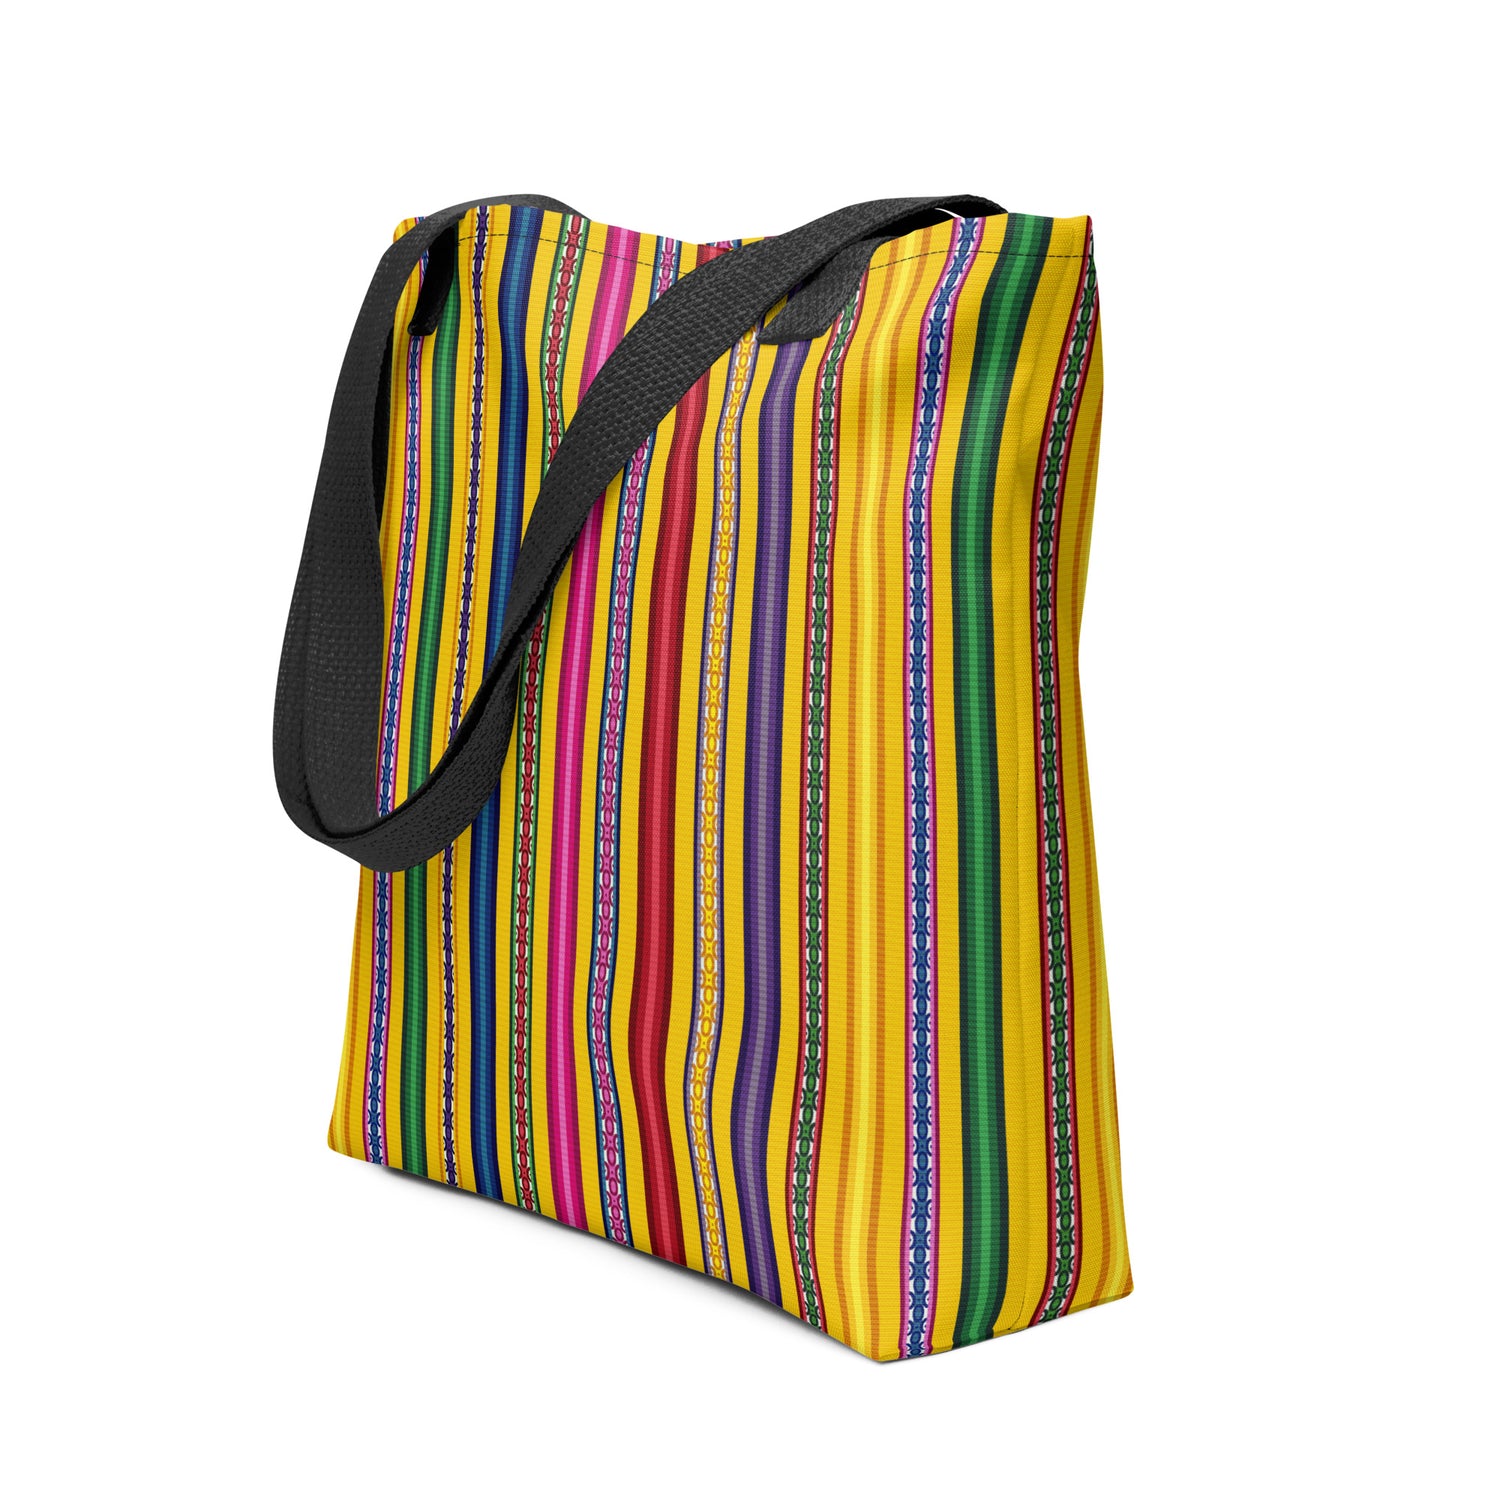 Peruvian Blanket Print Tote Bag